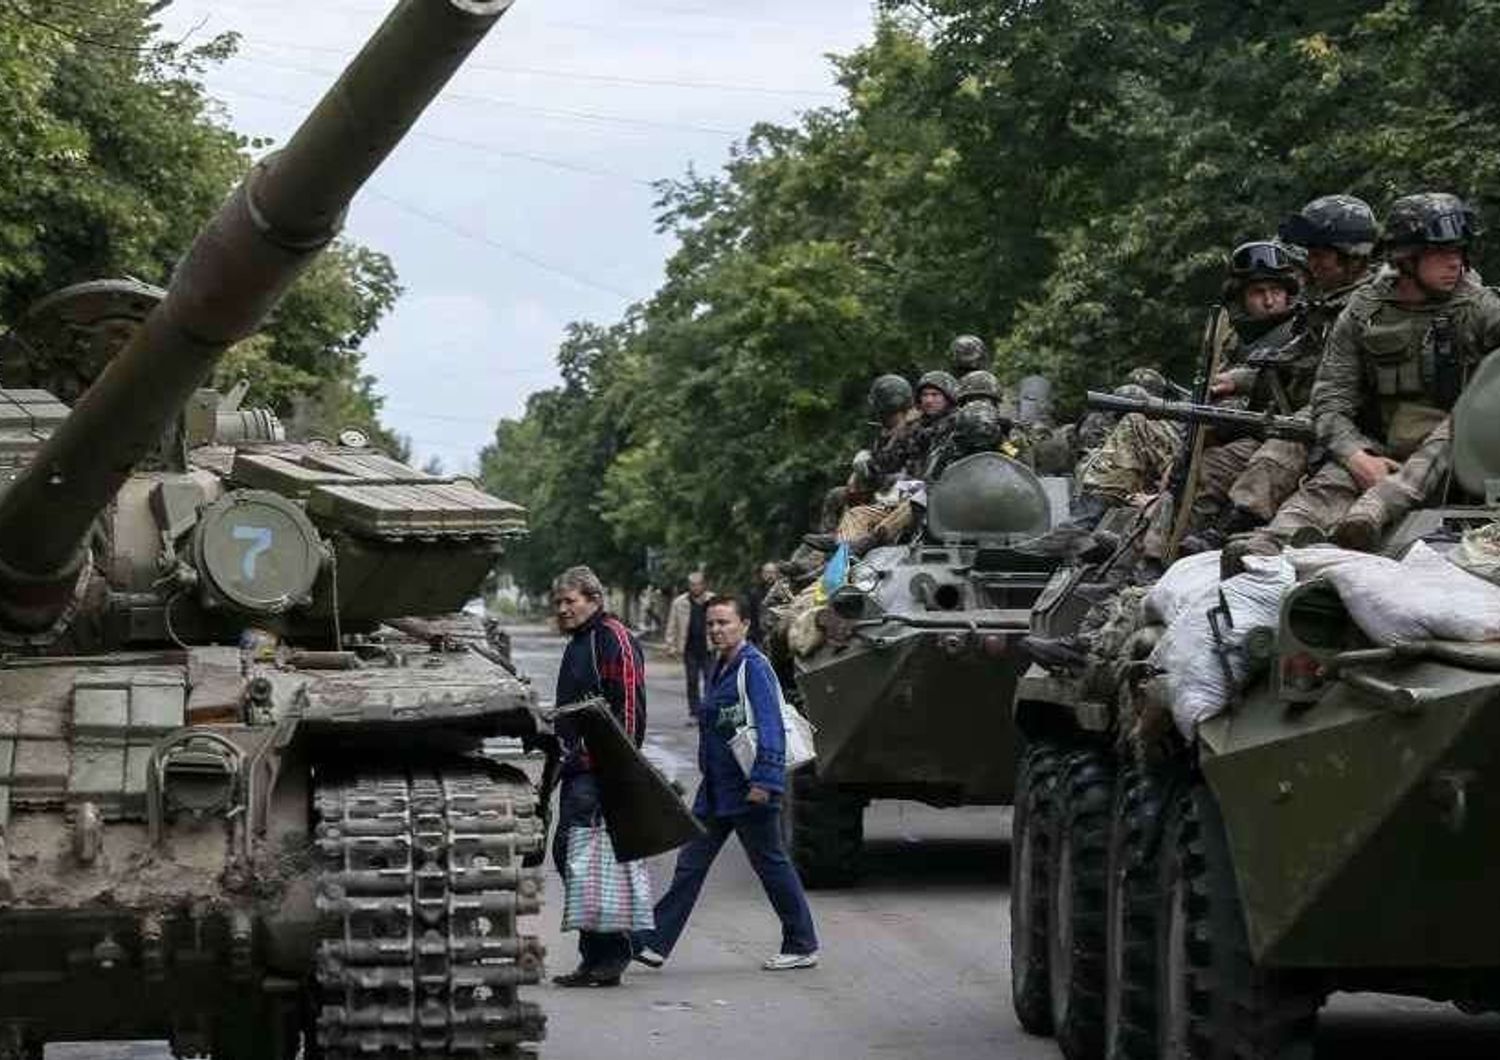 Ucraina: missili Grad fanno strage soldati, Poroshenko promette "vendetta"